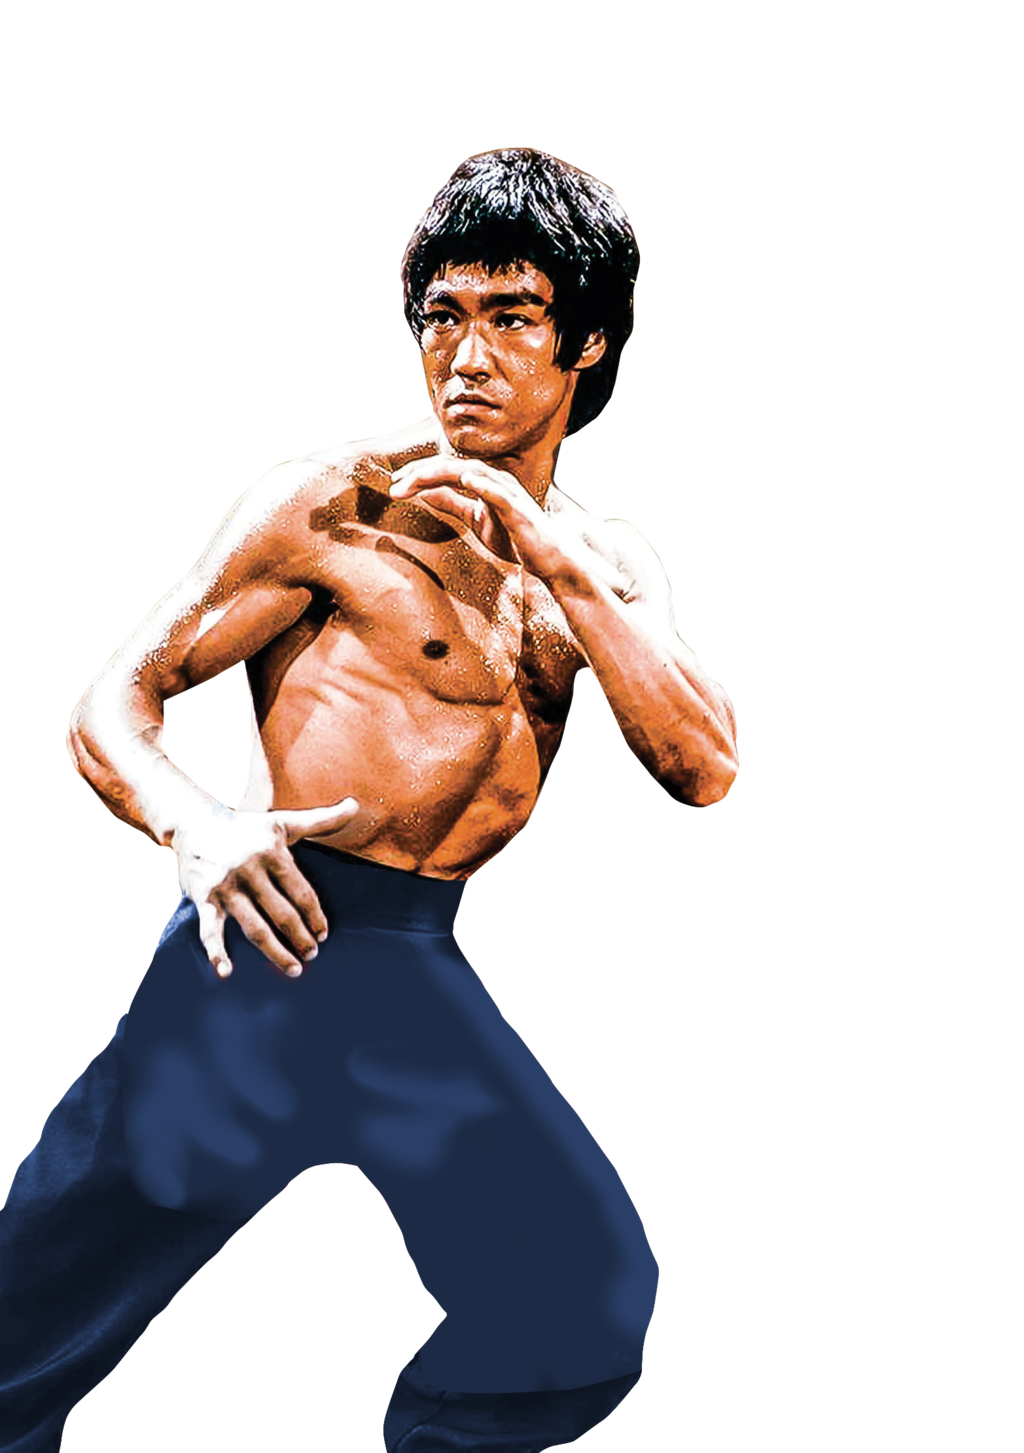 Bruce Lee PNG Image Transparent Background